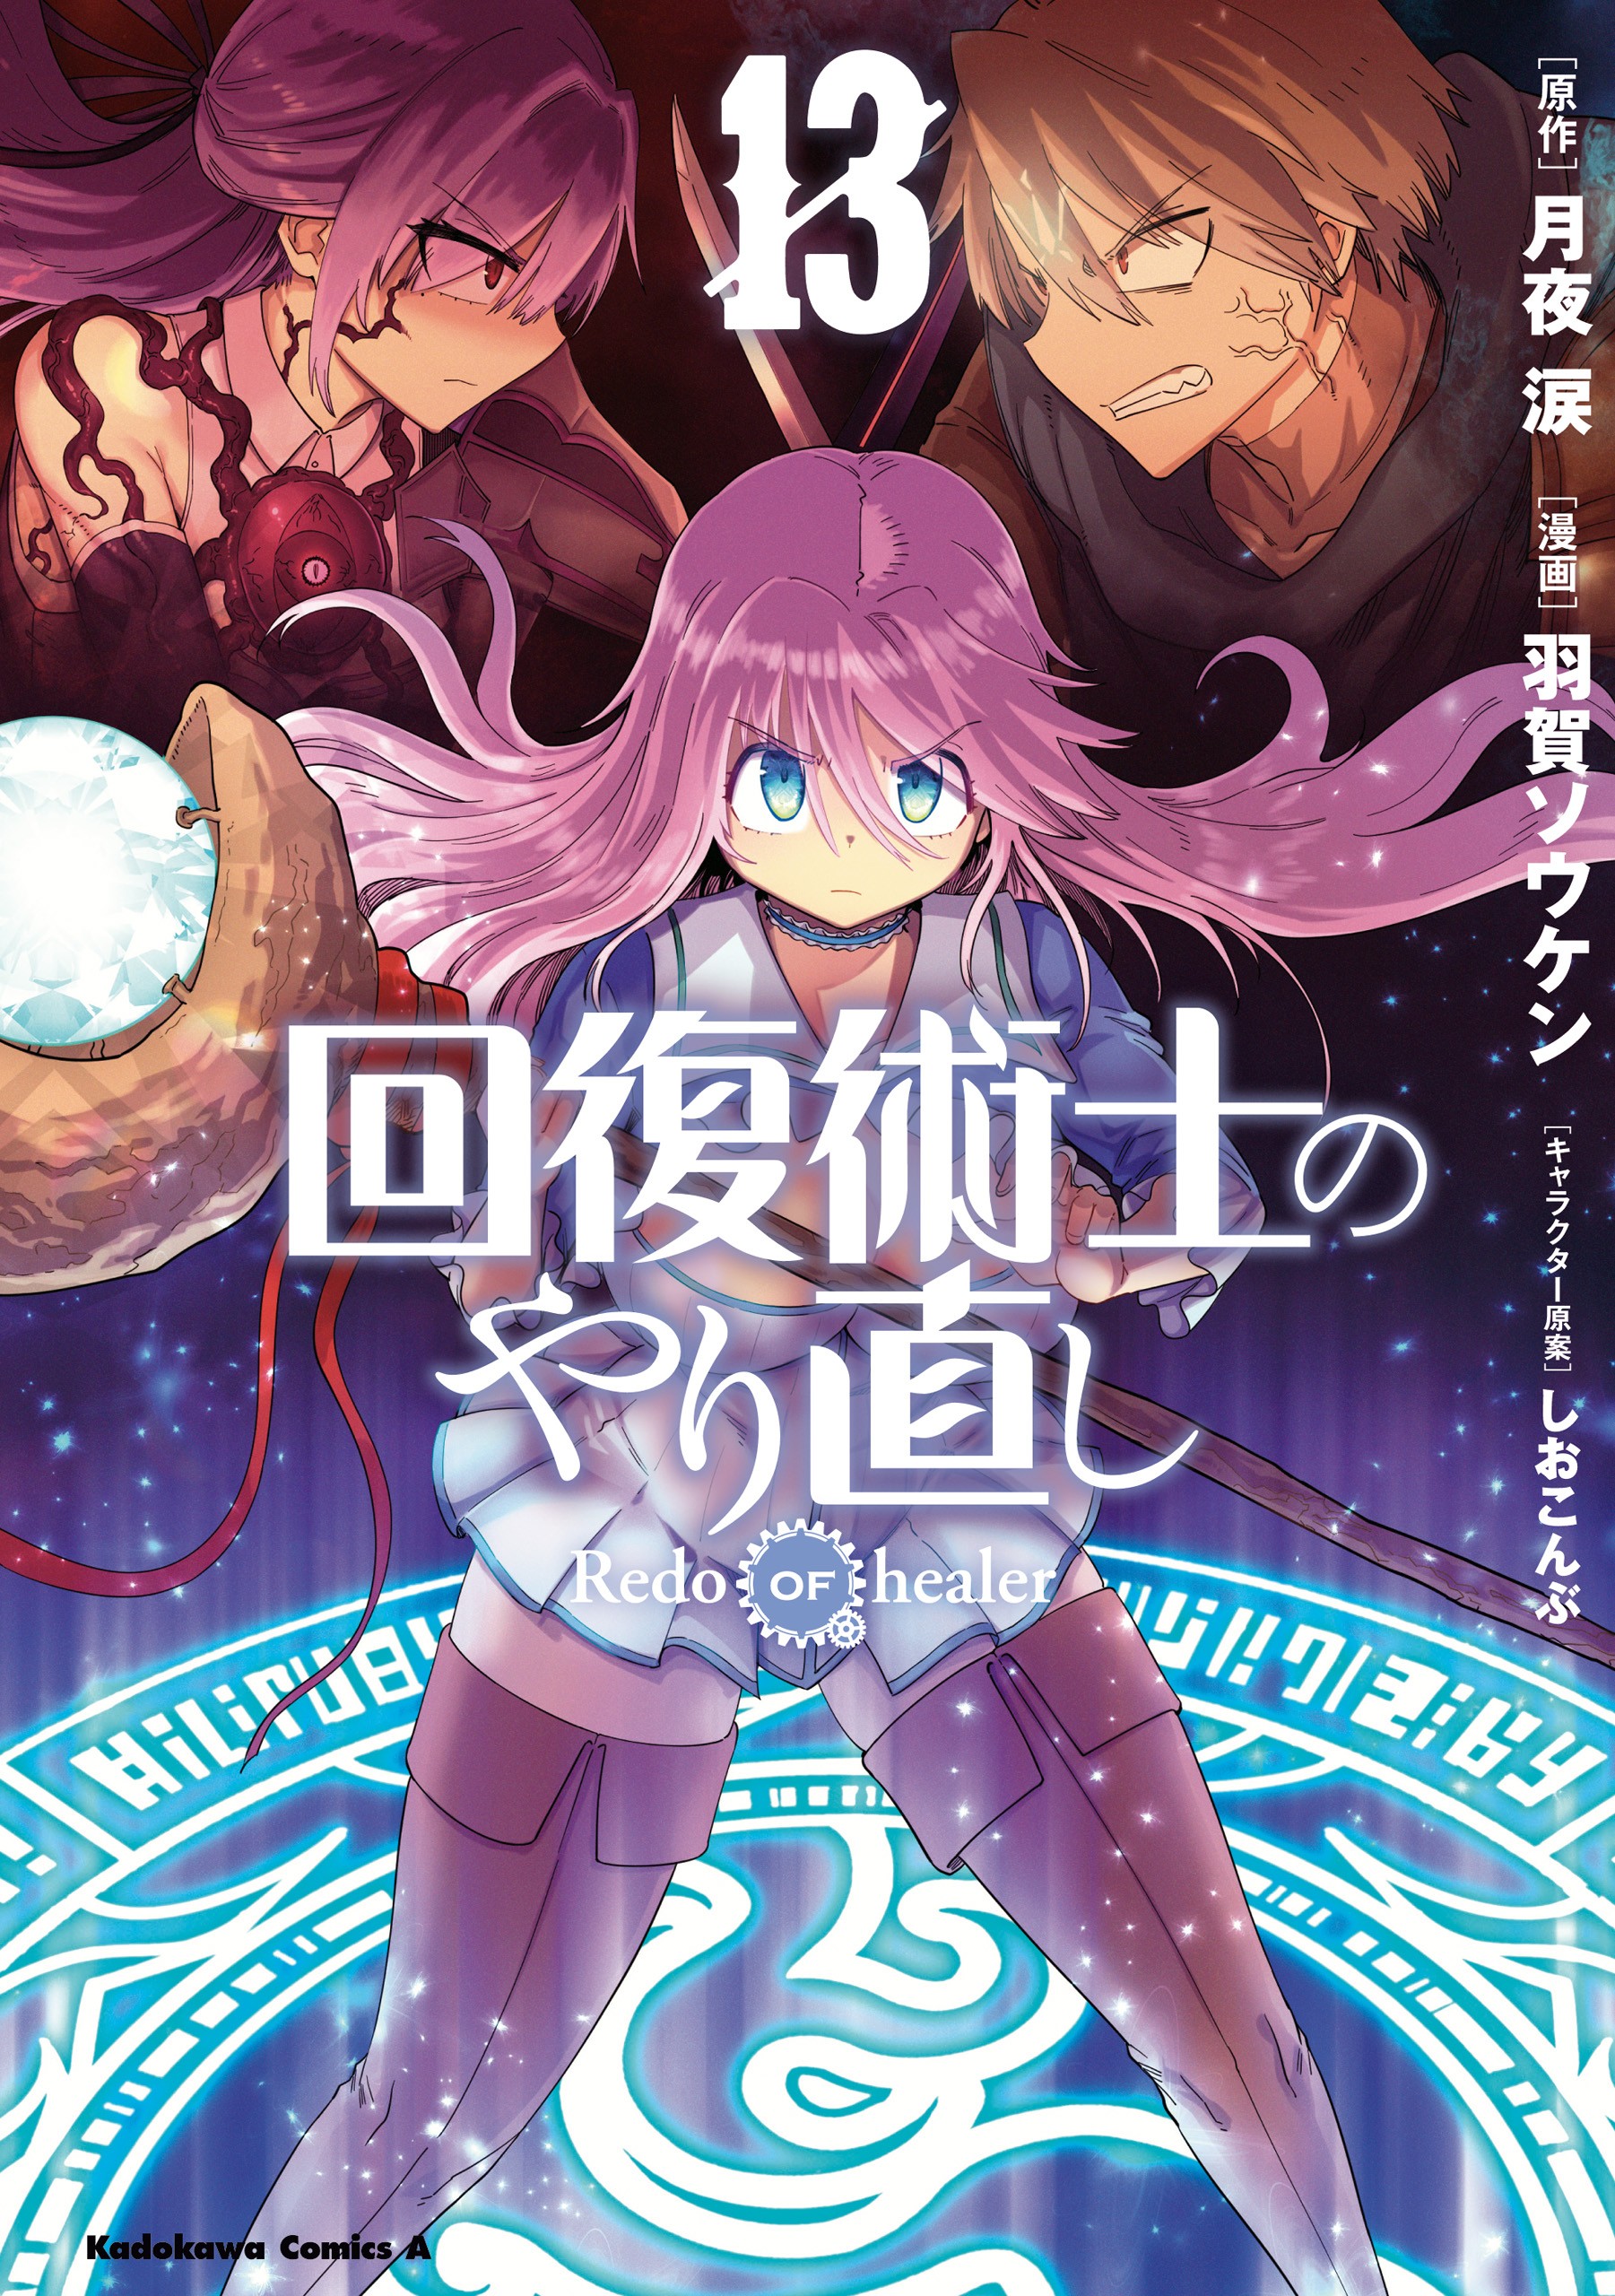 Redo of Healer Author: English Light Novel Translation Was